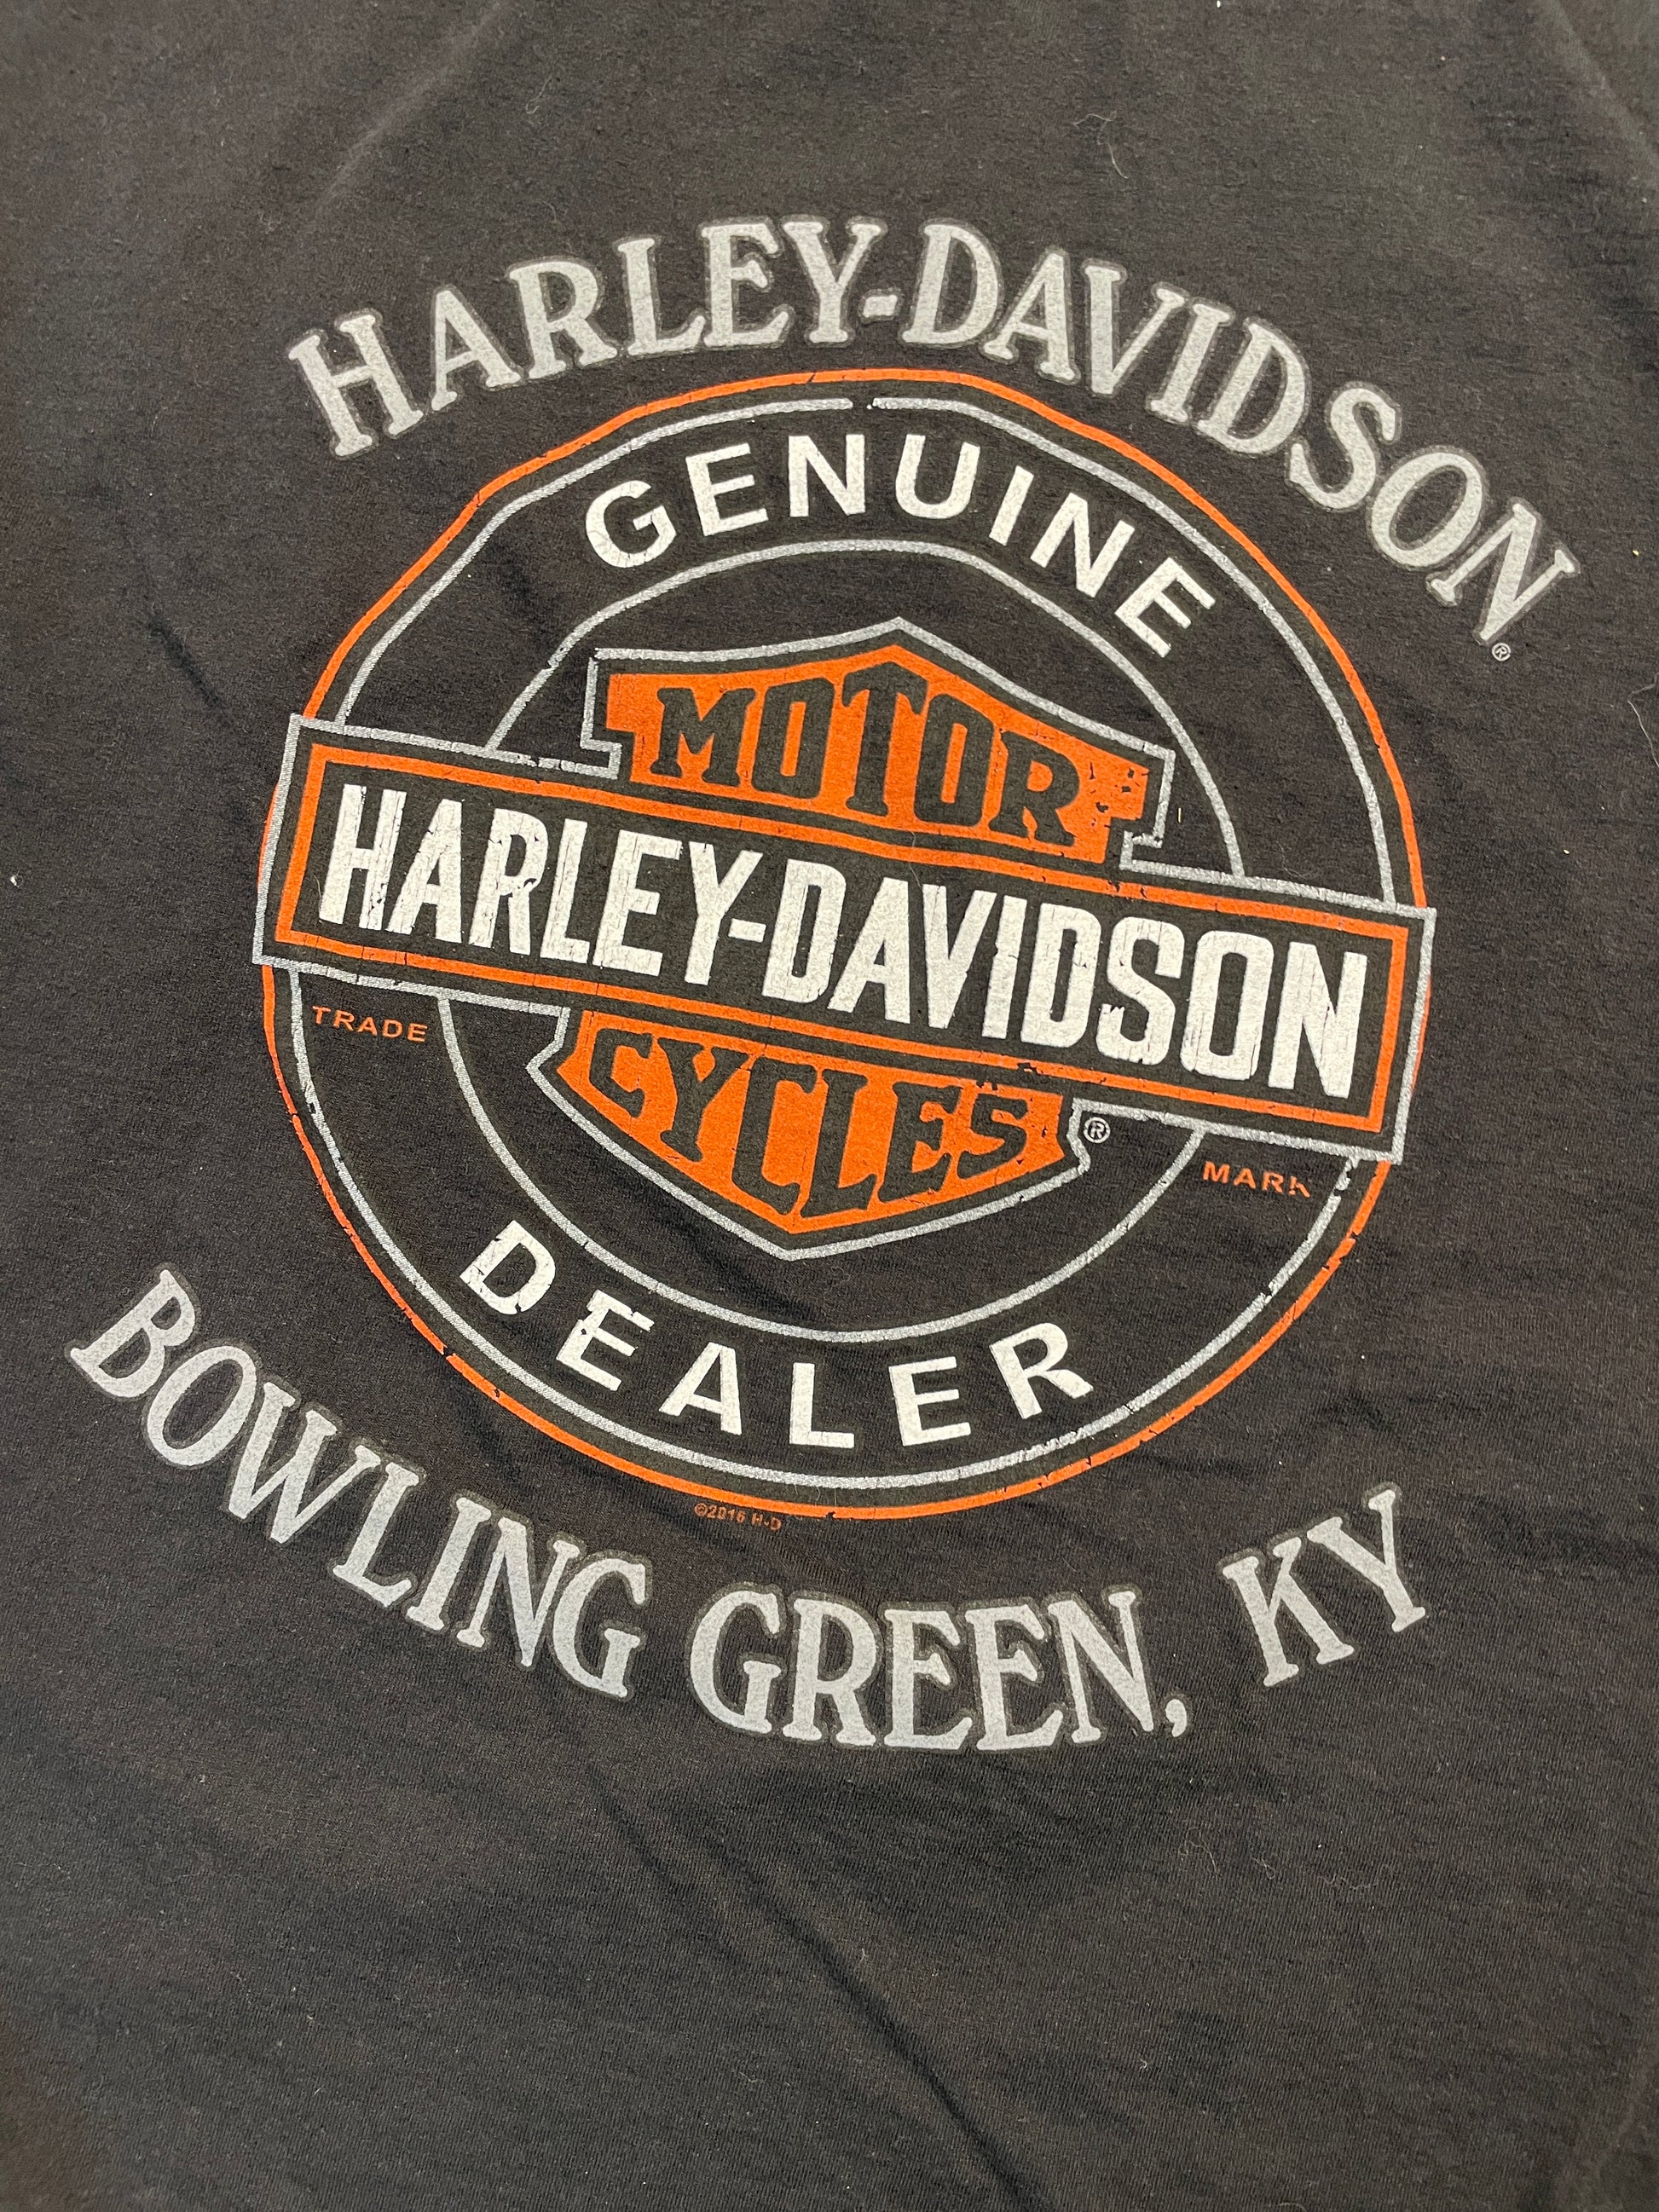 Harley Davidson Skulls Tee (Large), Tee - Vintage64.com